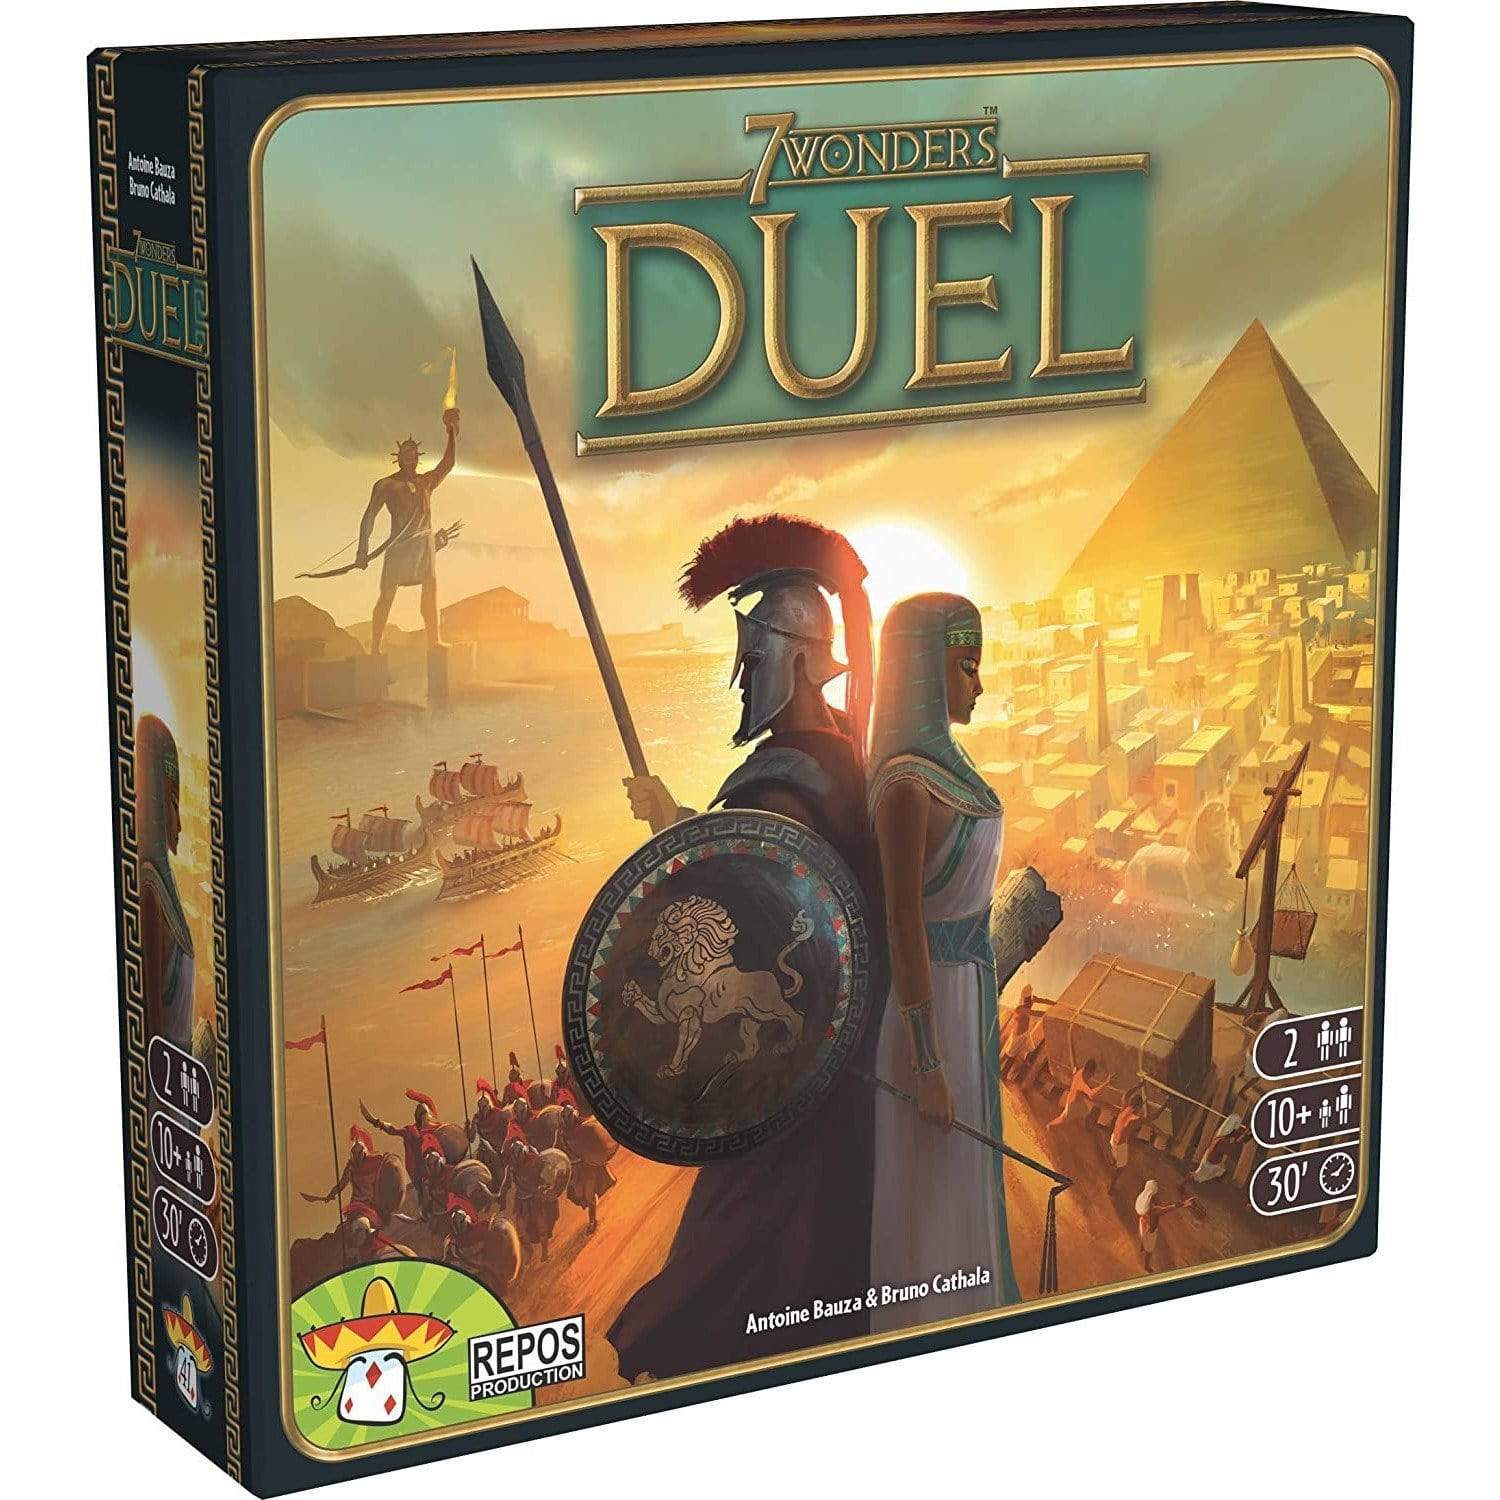 7 Wonders: Duel Asmodee Board Games